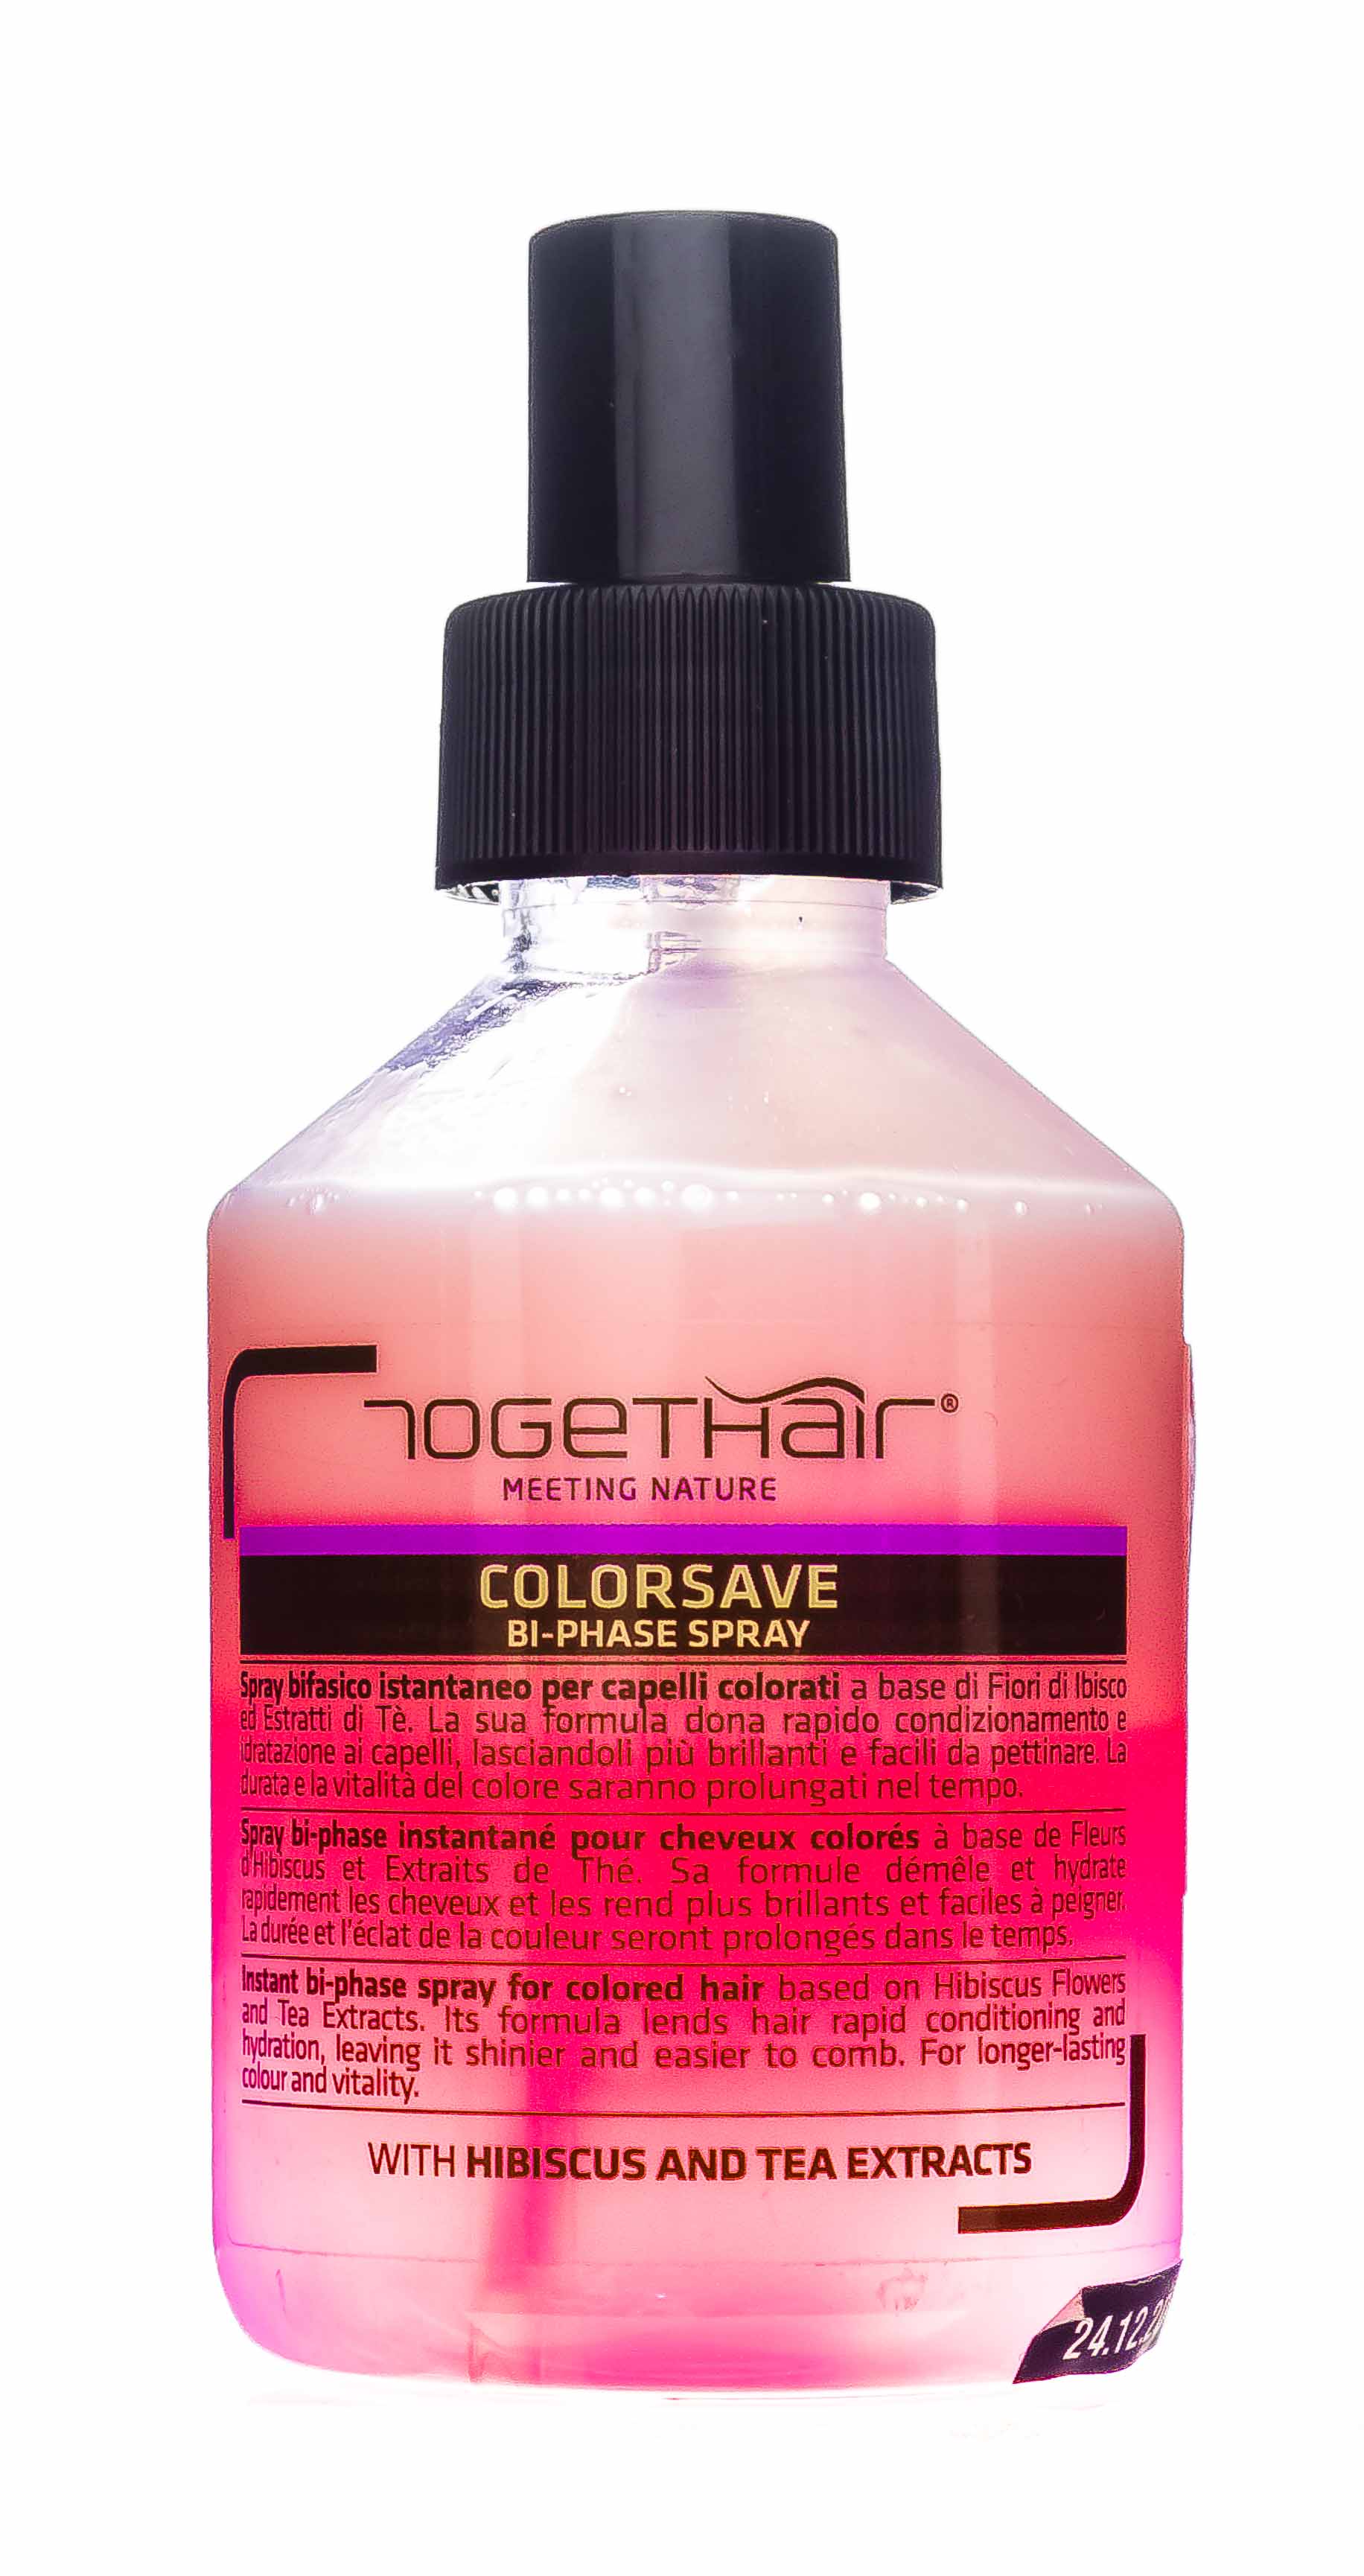 Togethair Двухфазный спрей для защиты цвета окрашенных волос, 200 мл (Togethair, Colorsave) двухфазный спрей для защиты цвета окрашенных волос colorsave bi phase spray 200мл